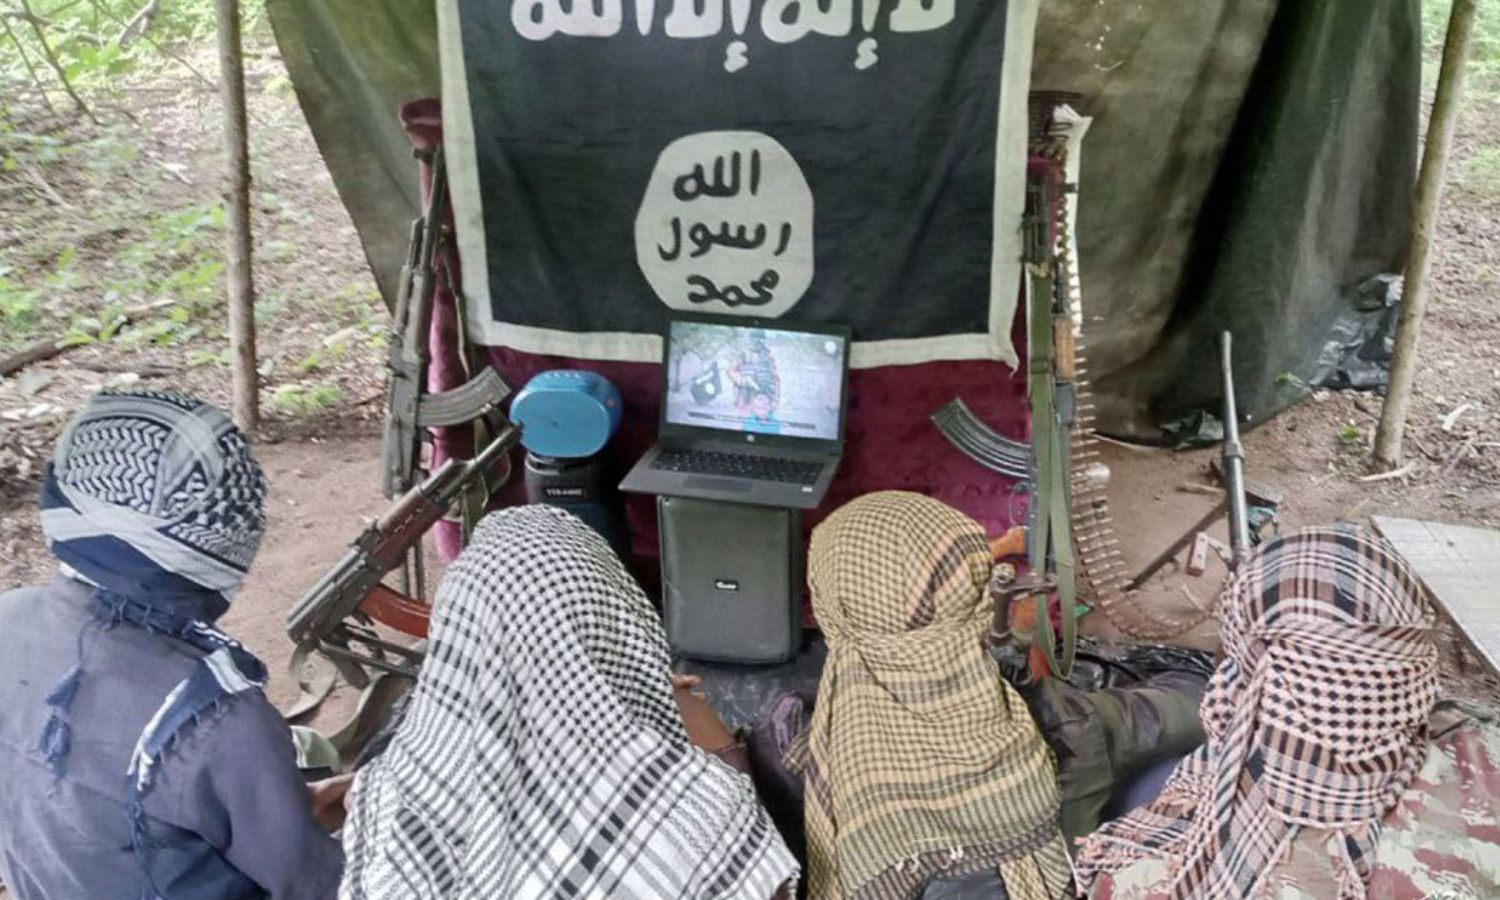 مقاتلون في تنظيم "الدولة الإسلامية" يشاهدون إصدارًا للتنظيم بعنوان "إن الشرك لظلم عظيم" (معرف موزمبيق للتنظيم)